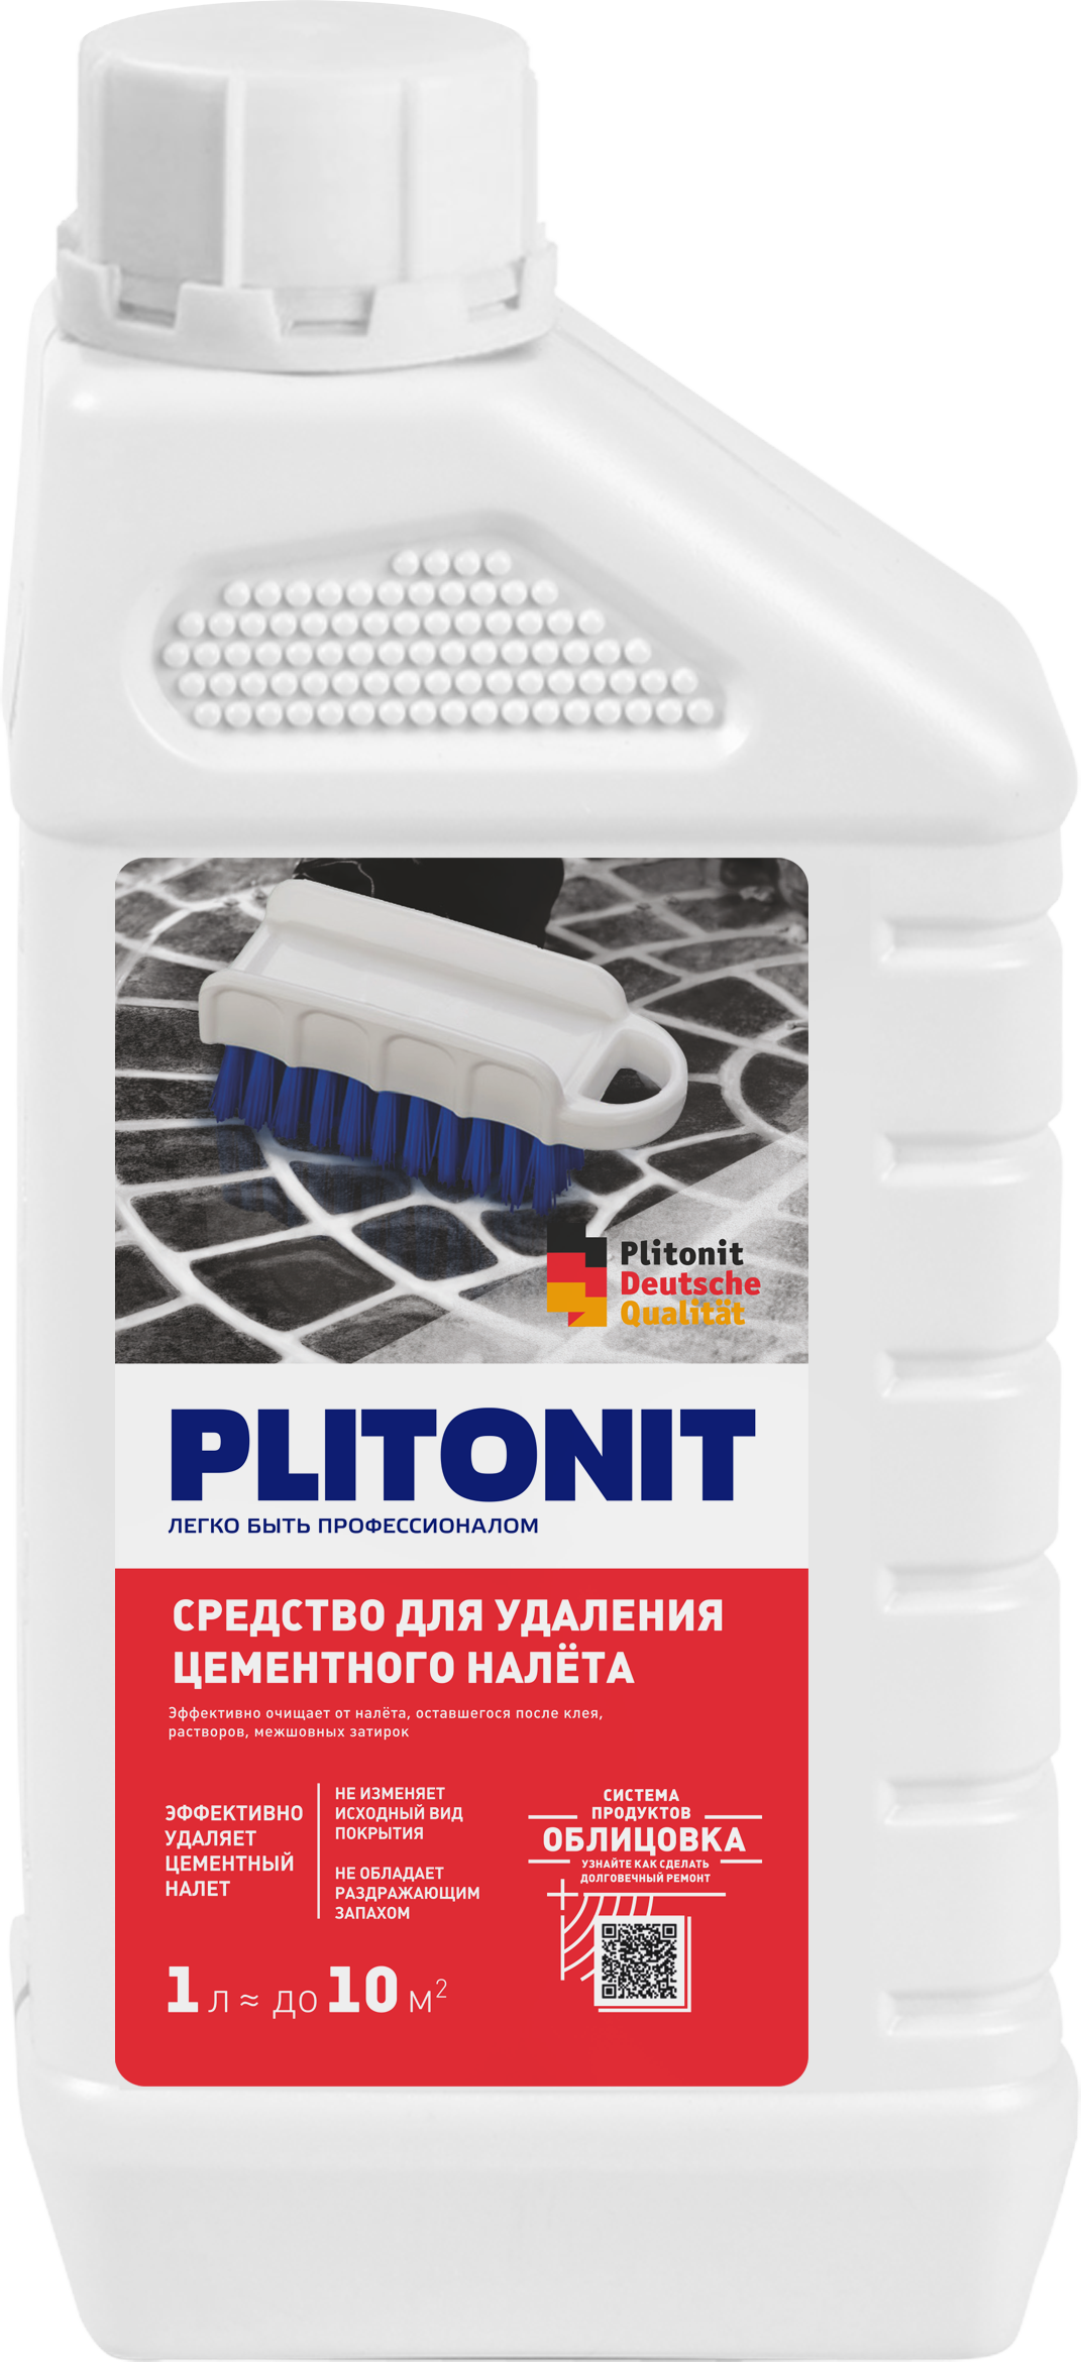 Средство для удаления цементного налета PLITONIT — купить в магазинах  вашего города по доступной цене